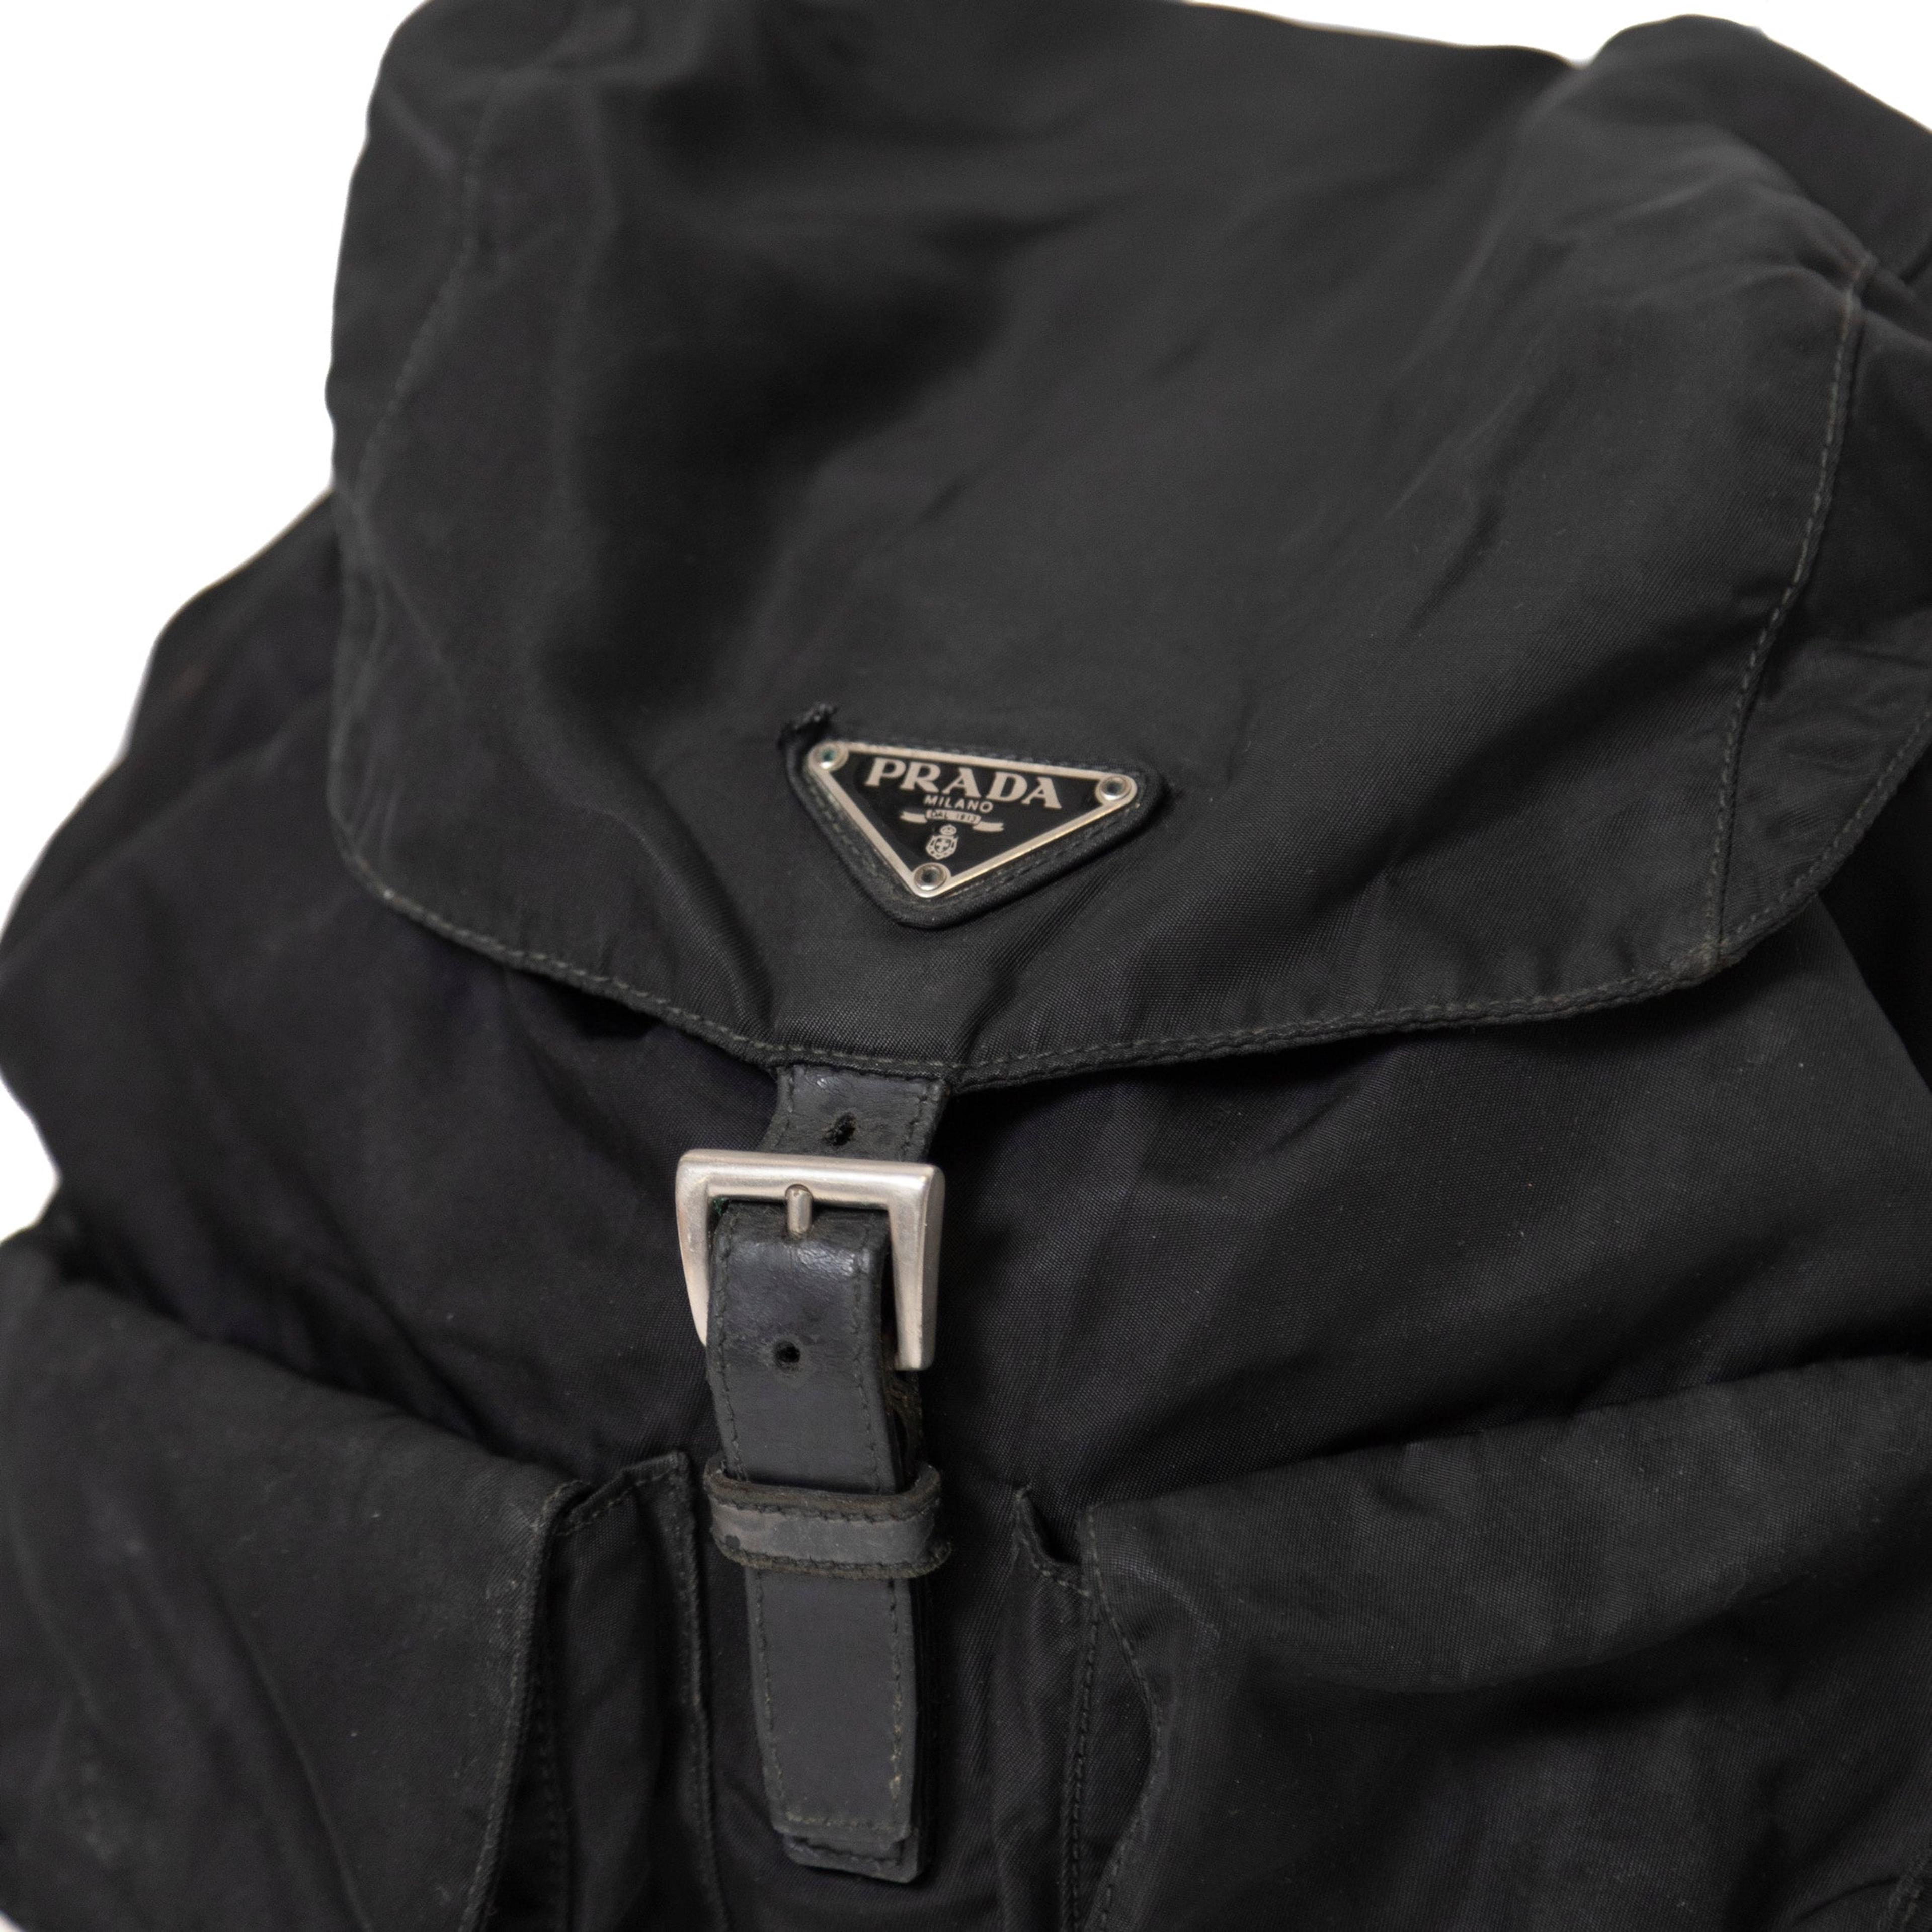 Alternate View 1 of Prada Re-Nylon Pocket Backpack